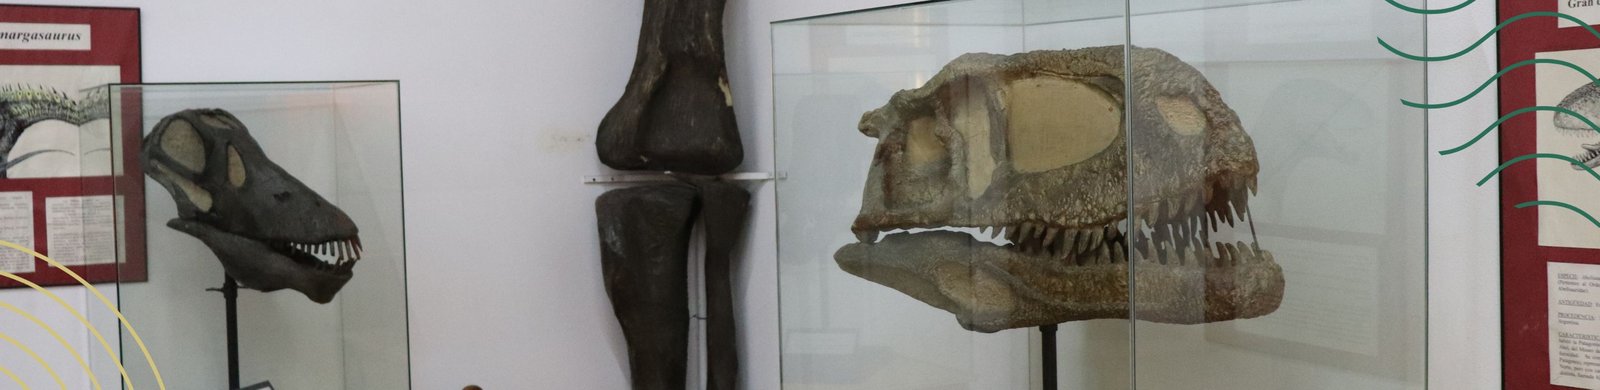 ¡Felices 141 años Museo de Paleontología!.jpg